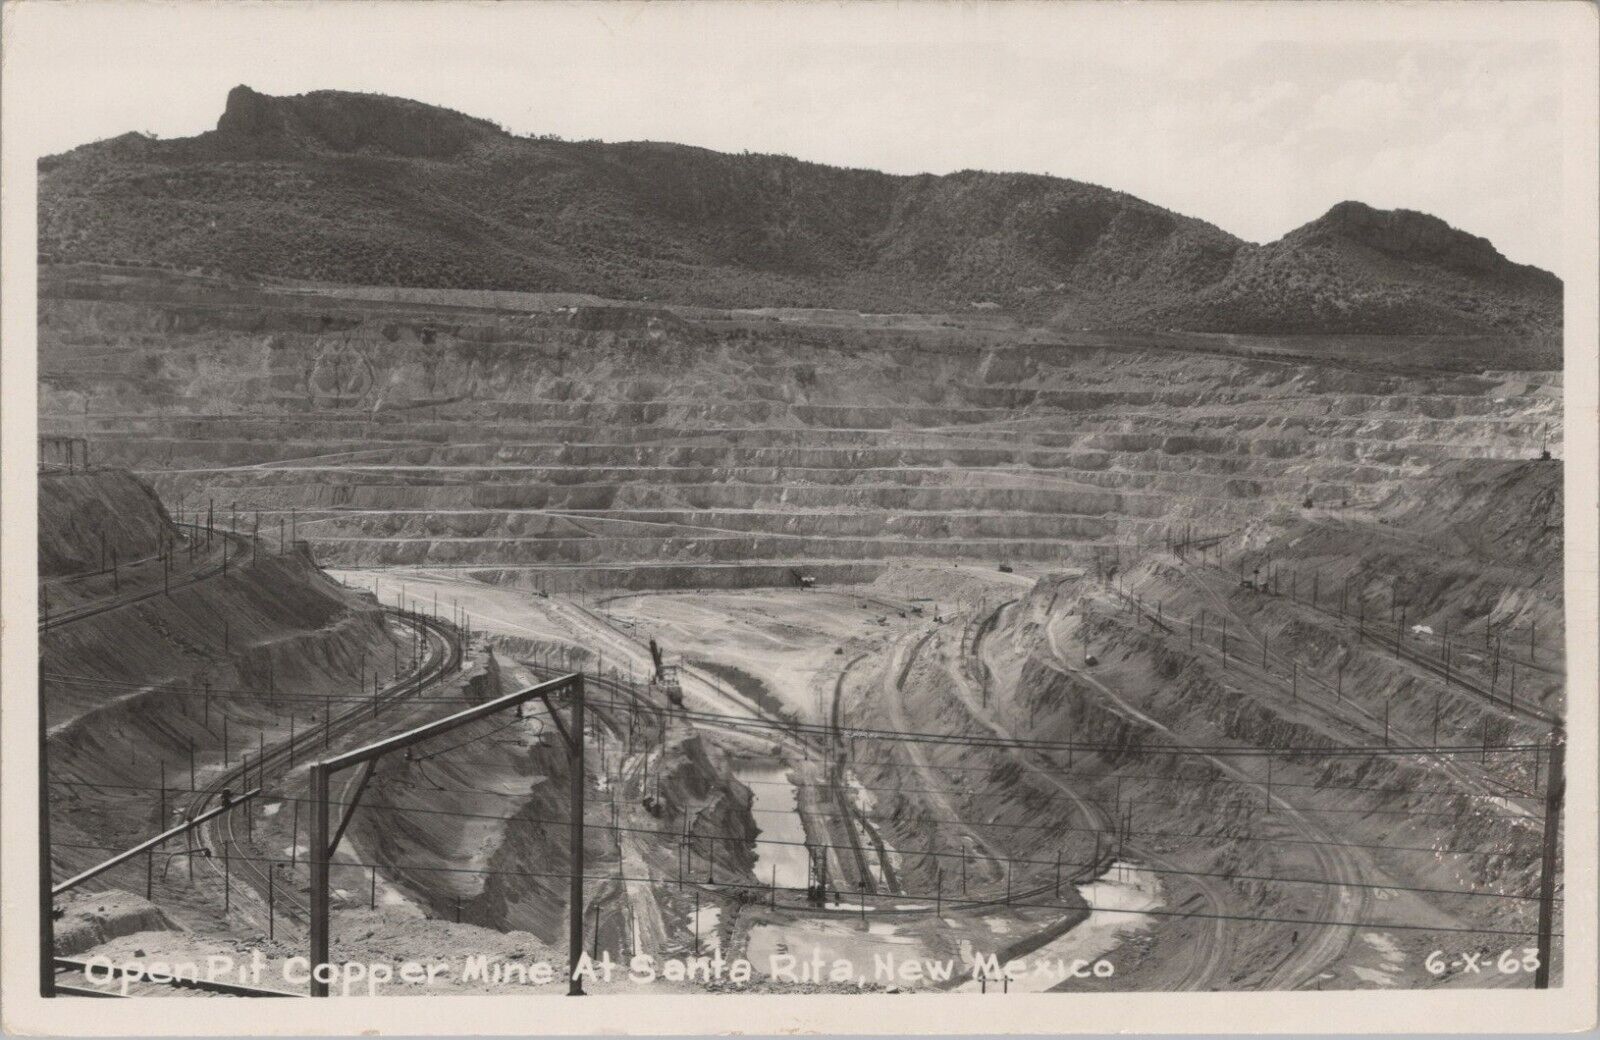 RPPC Santa Rita NM Open Pit Copper Mine Aerial View photo postcard EP5